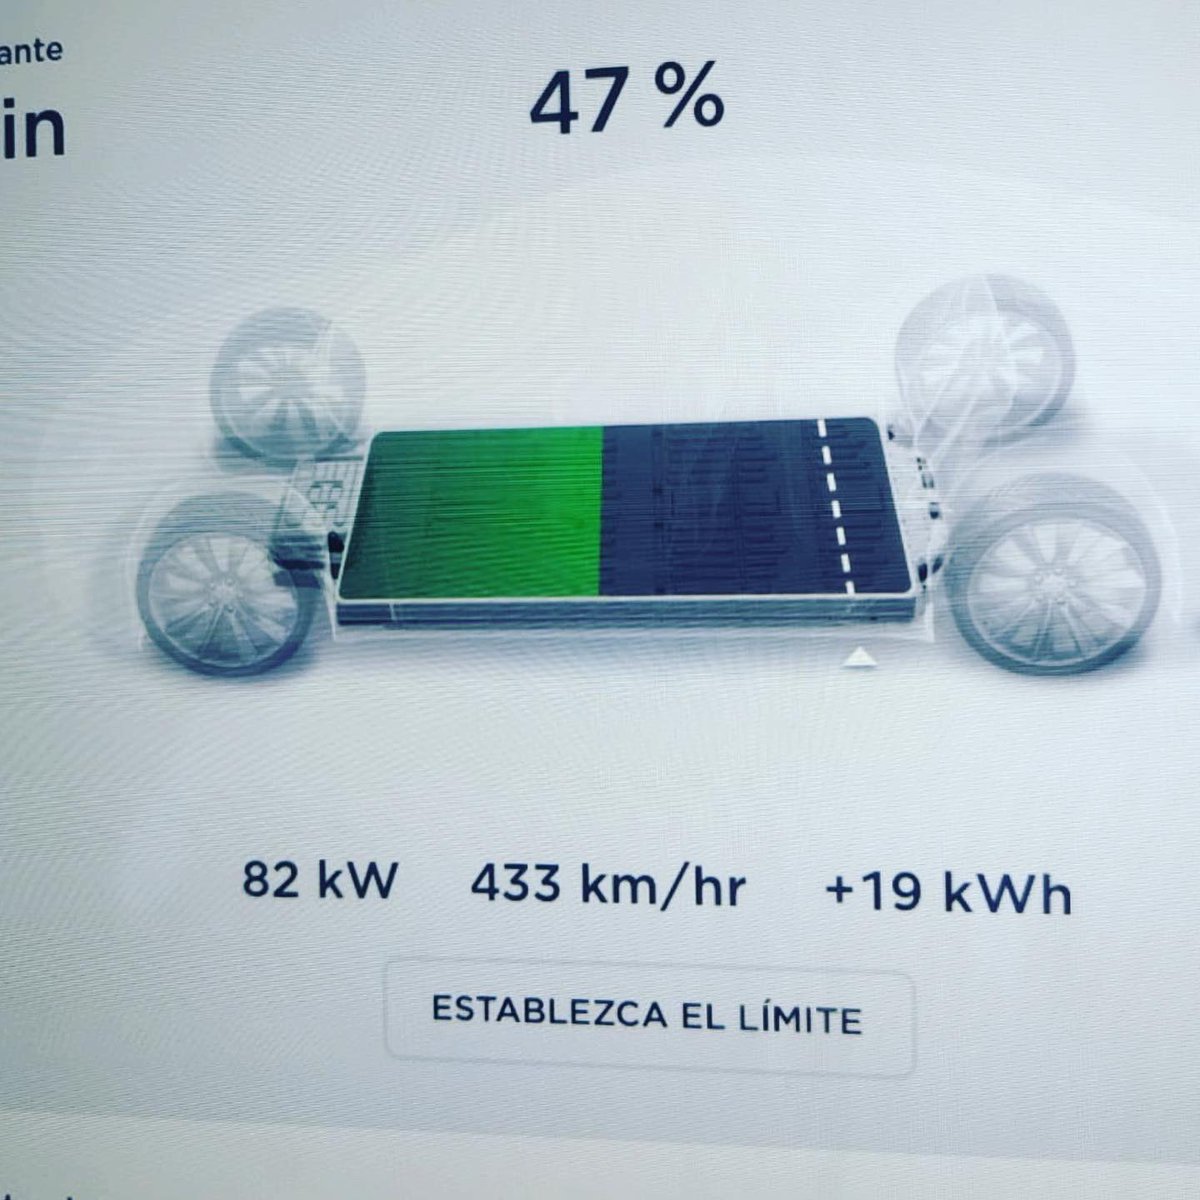 De escapada a Granada con unas fantásticas estadísticas del Tesla Model S 75D #alquilauntesla #tesla #teslamodels #teslamodels75d #balck #teslasupercharger #guarroman #españa #spain #vehiculoelectrico #electricvehicle #roadtogranada